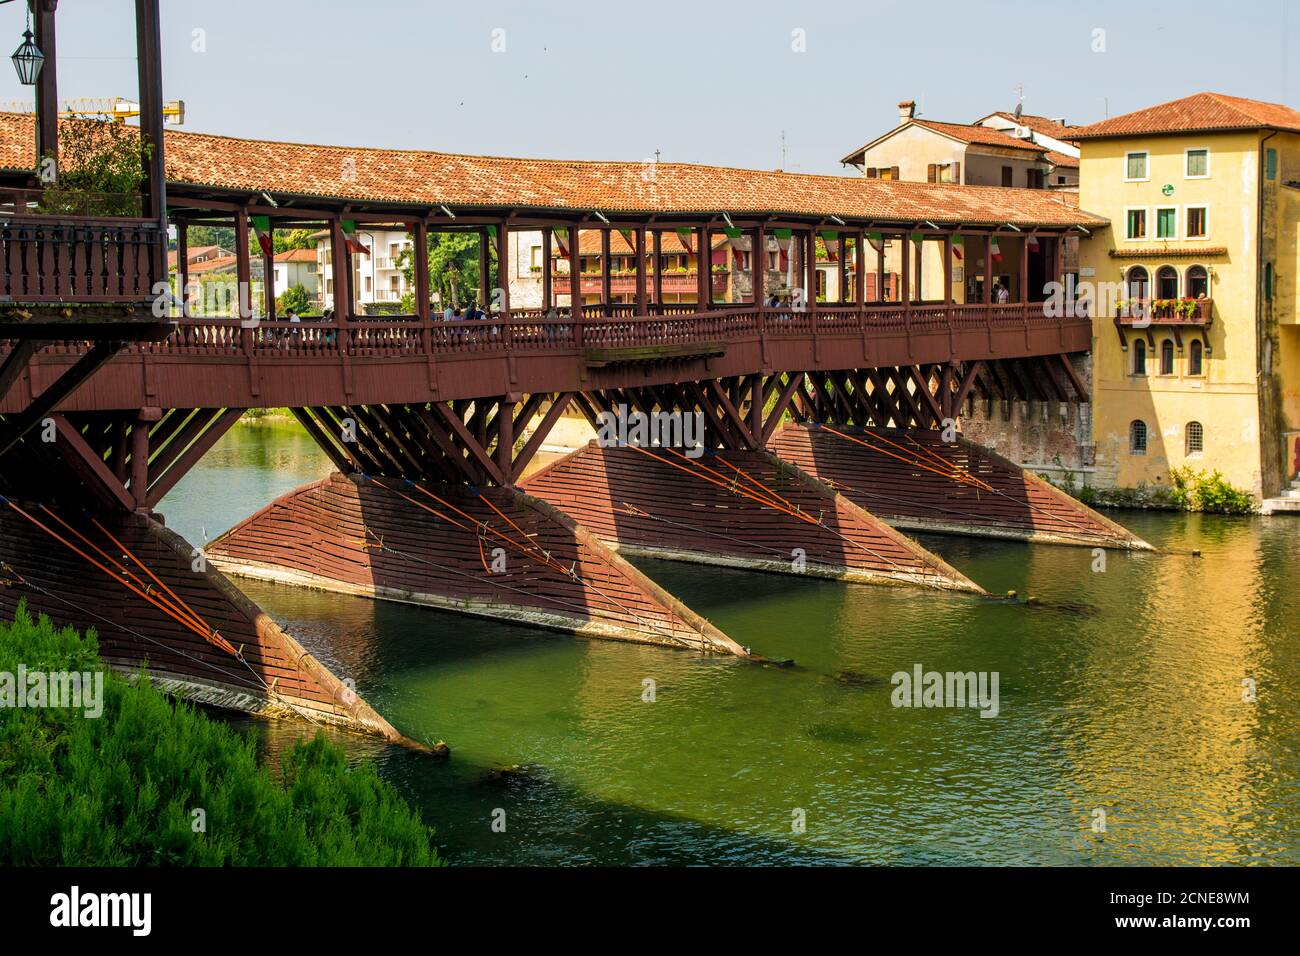 Ponte Vecchio bridge over the River Brenta, Bassano del Grappa, Veneto region, Italy, Europe Stock Photo